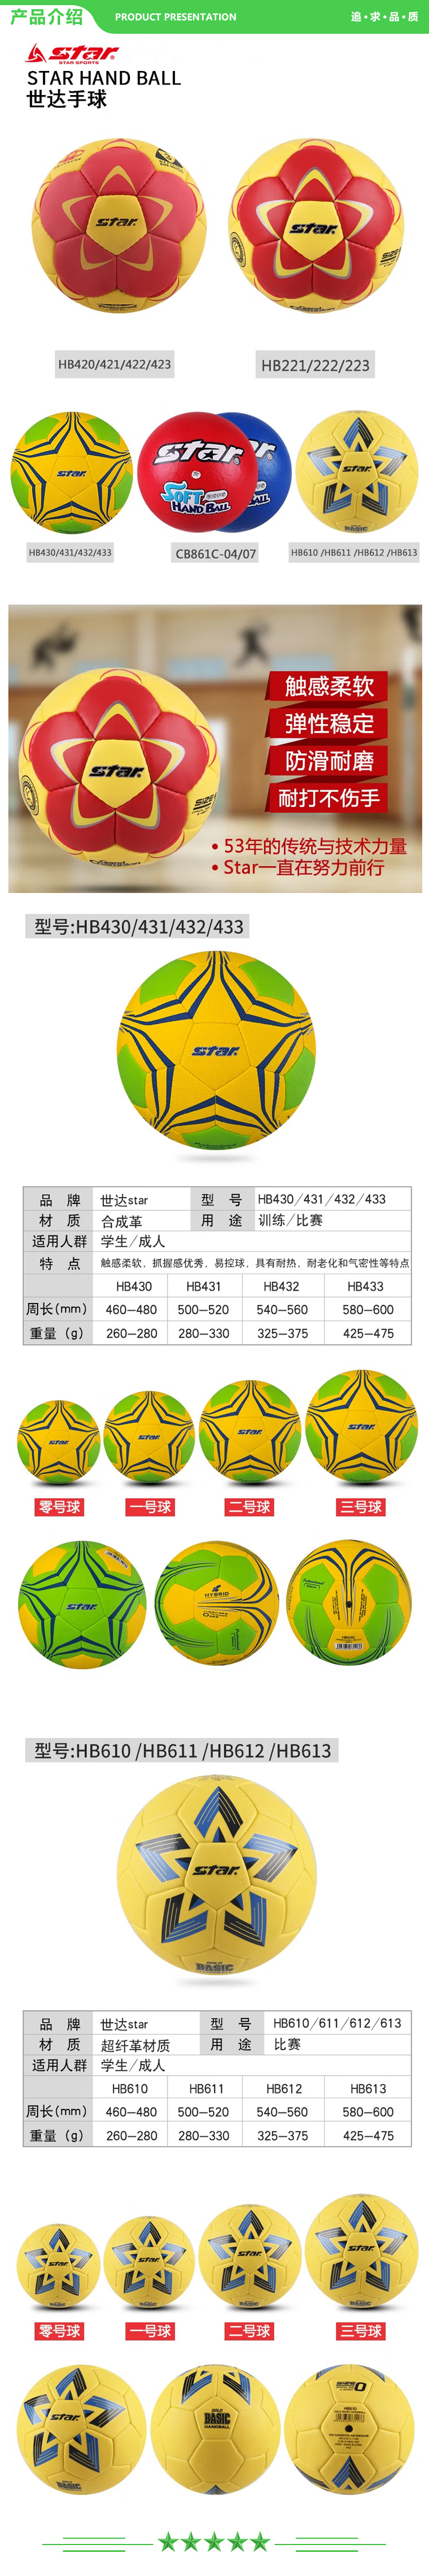 世达 star HB610 零号球 手球比赛用球防滑pu材质舒适控球比赛训练用球 .jpg